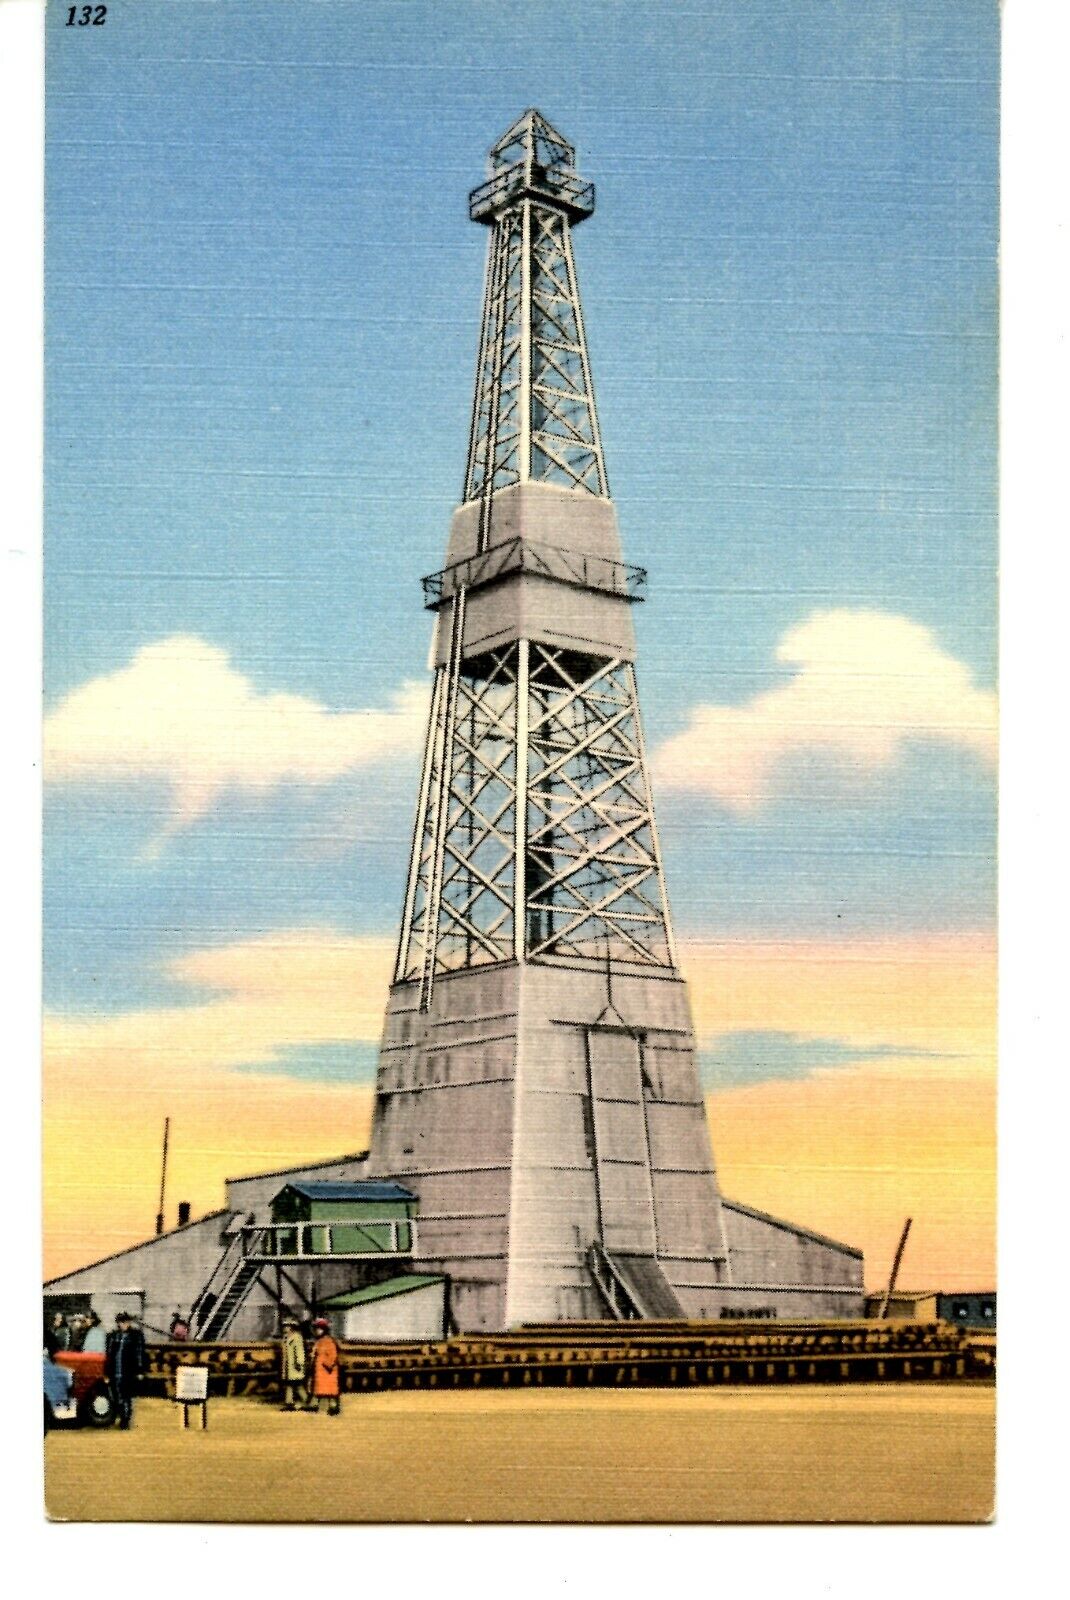 Producing Oil Well-Derrick-Williston Basin-North Dakota-Vintage Linen Postcard